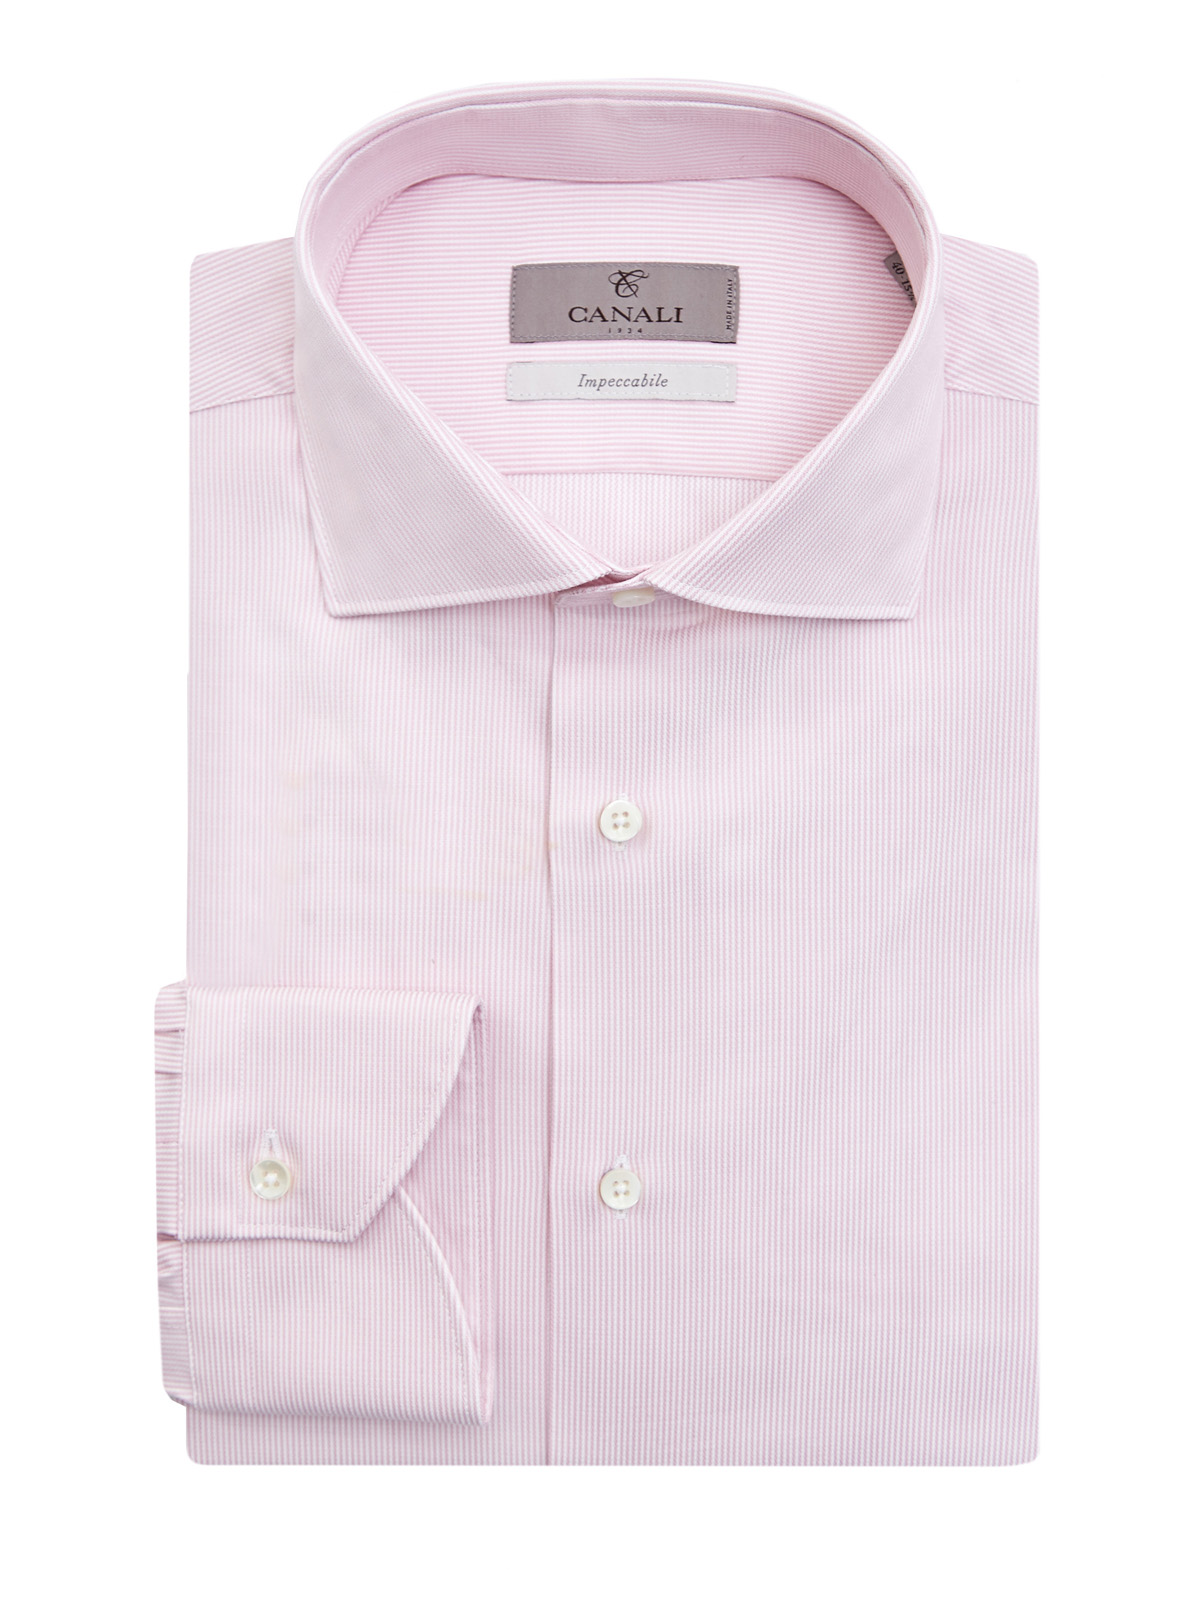 Рубашка из эластичного поплина Impeccabile в тонкую полоску CANALI, цвет розовый, размер 50;52;52;54;56